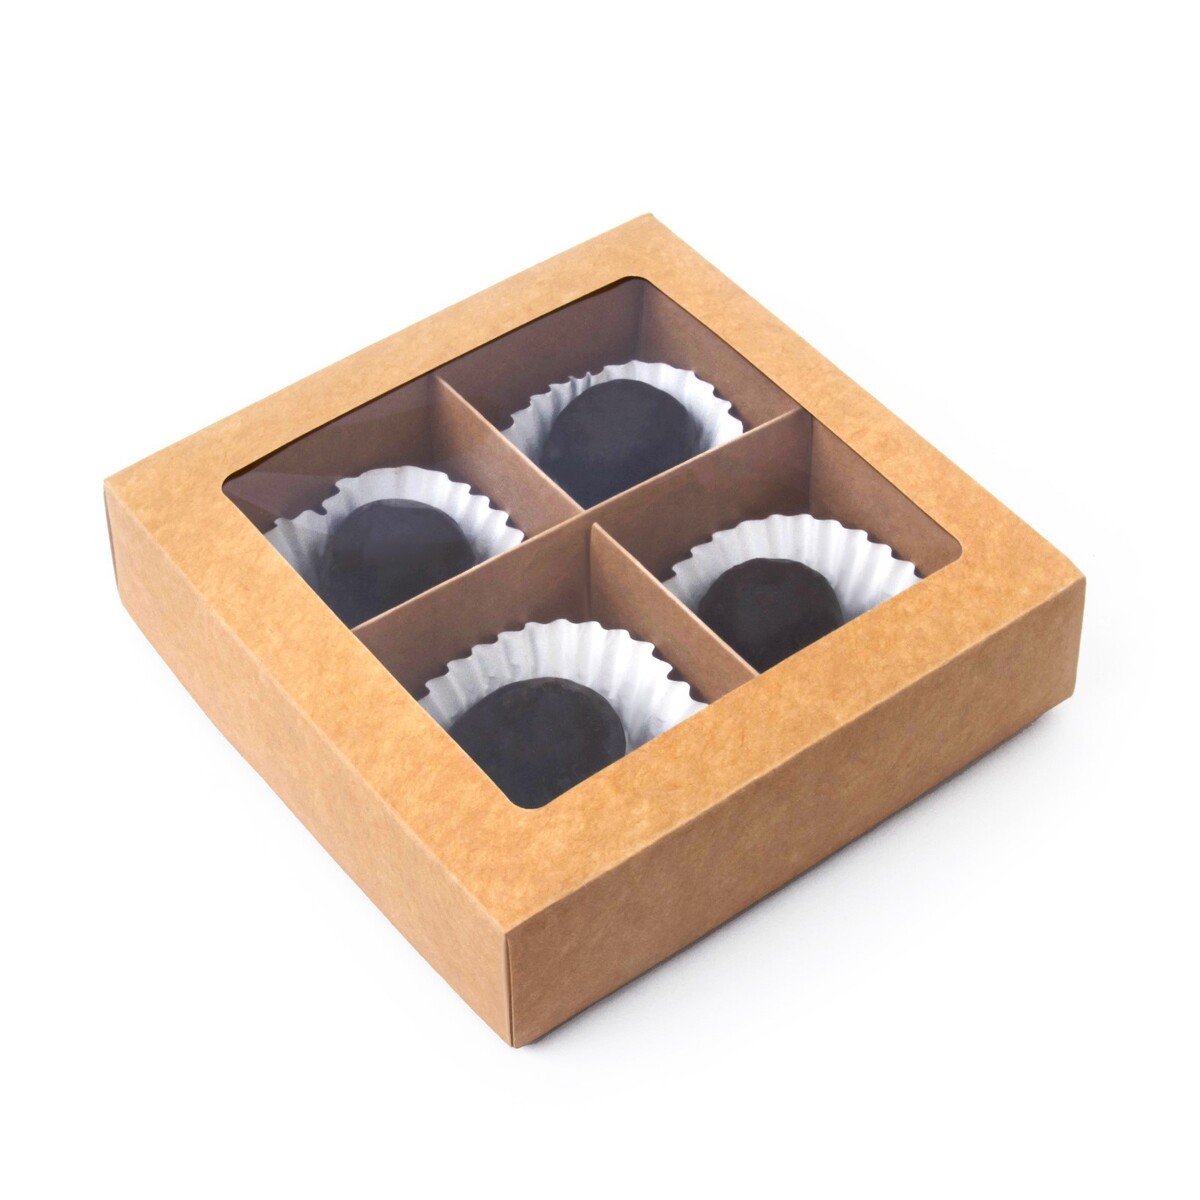 Коробка складная под 4 конфеты с окном, крафт, 12.6 х 12.6 х 3.5 см коробка под 4 конфеты